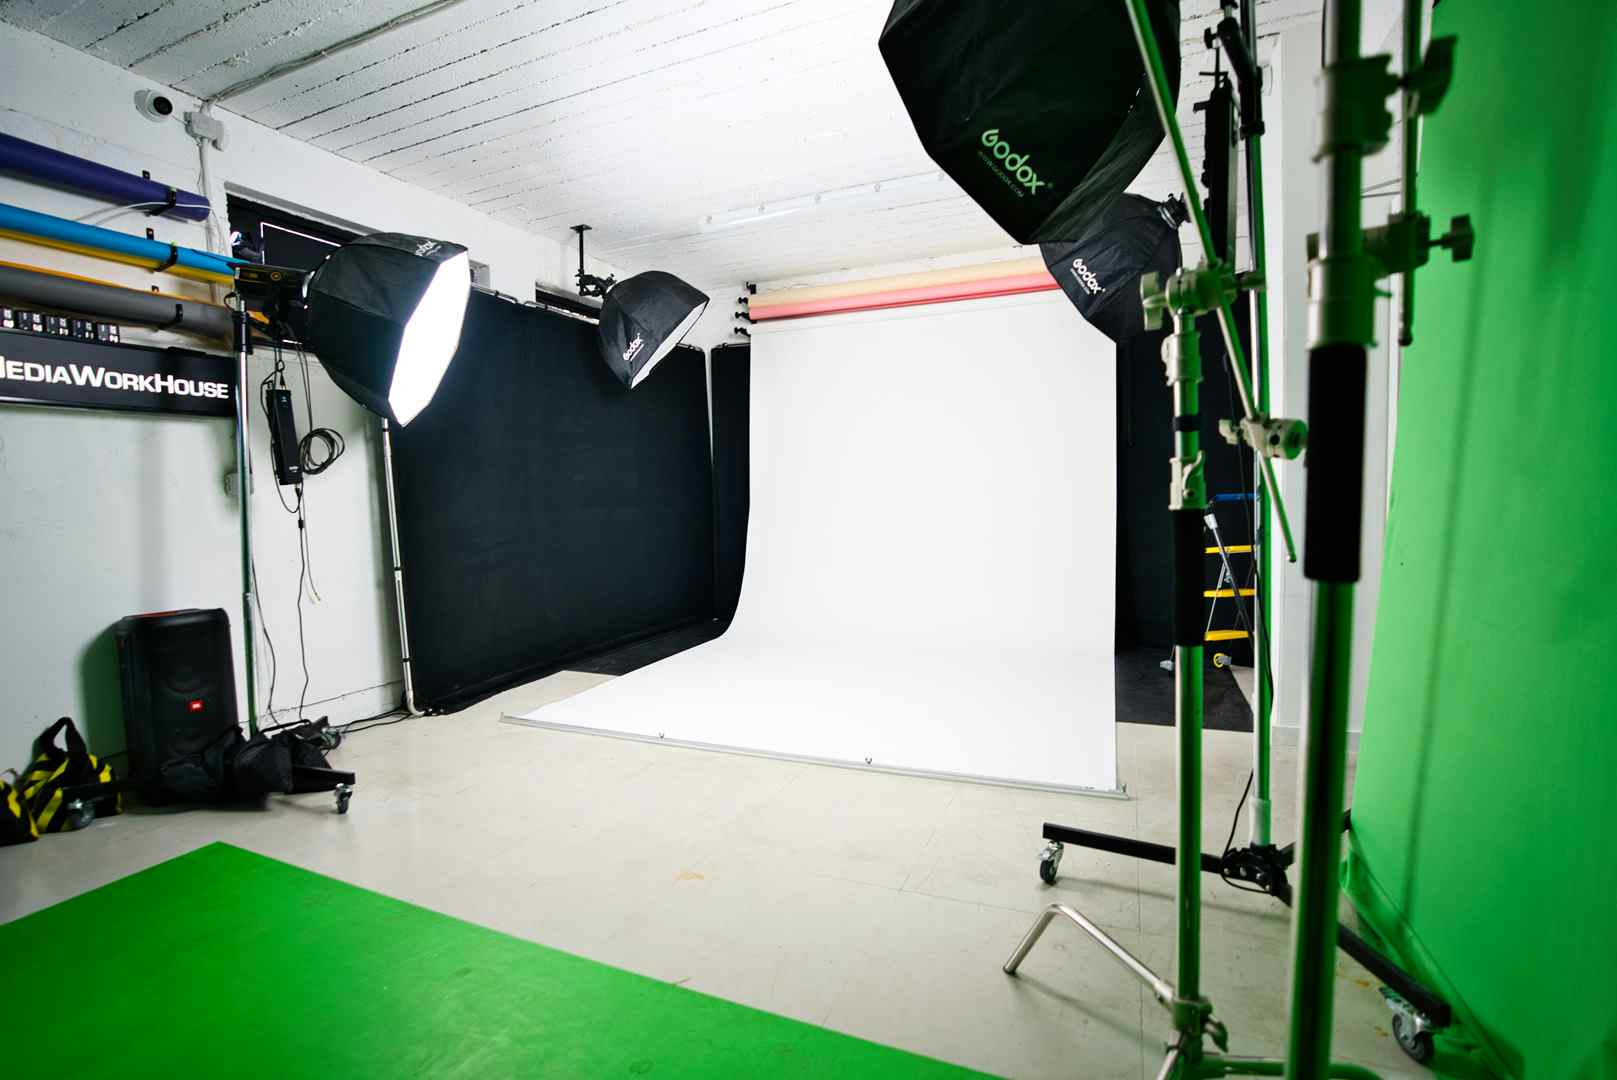 Photography Studio, MediaWorkHouse